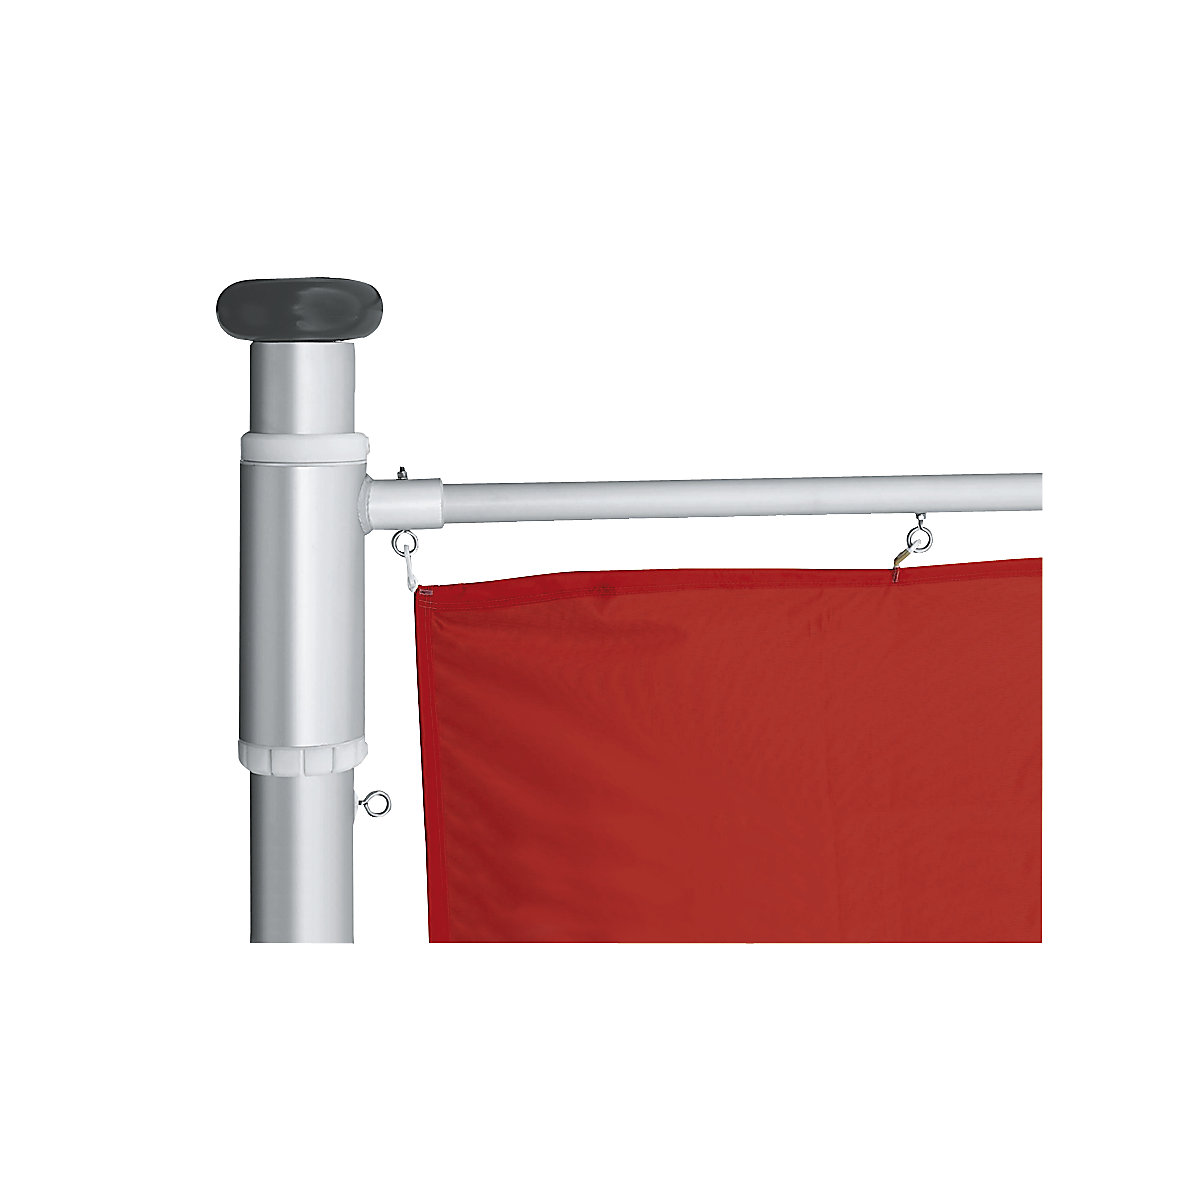 Mannus – Mastro de bandeira em alumínio PRESTIGE (Imagem do produto 7)